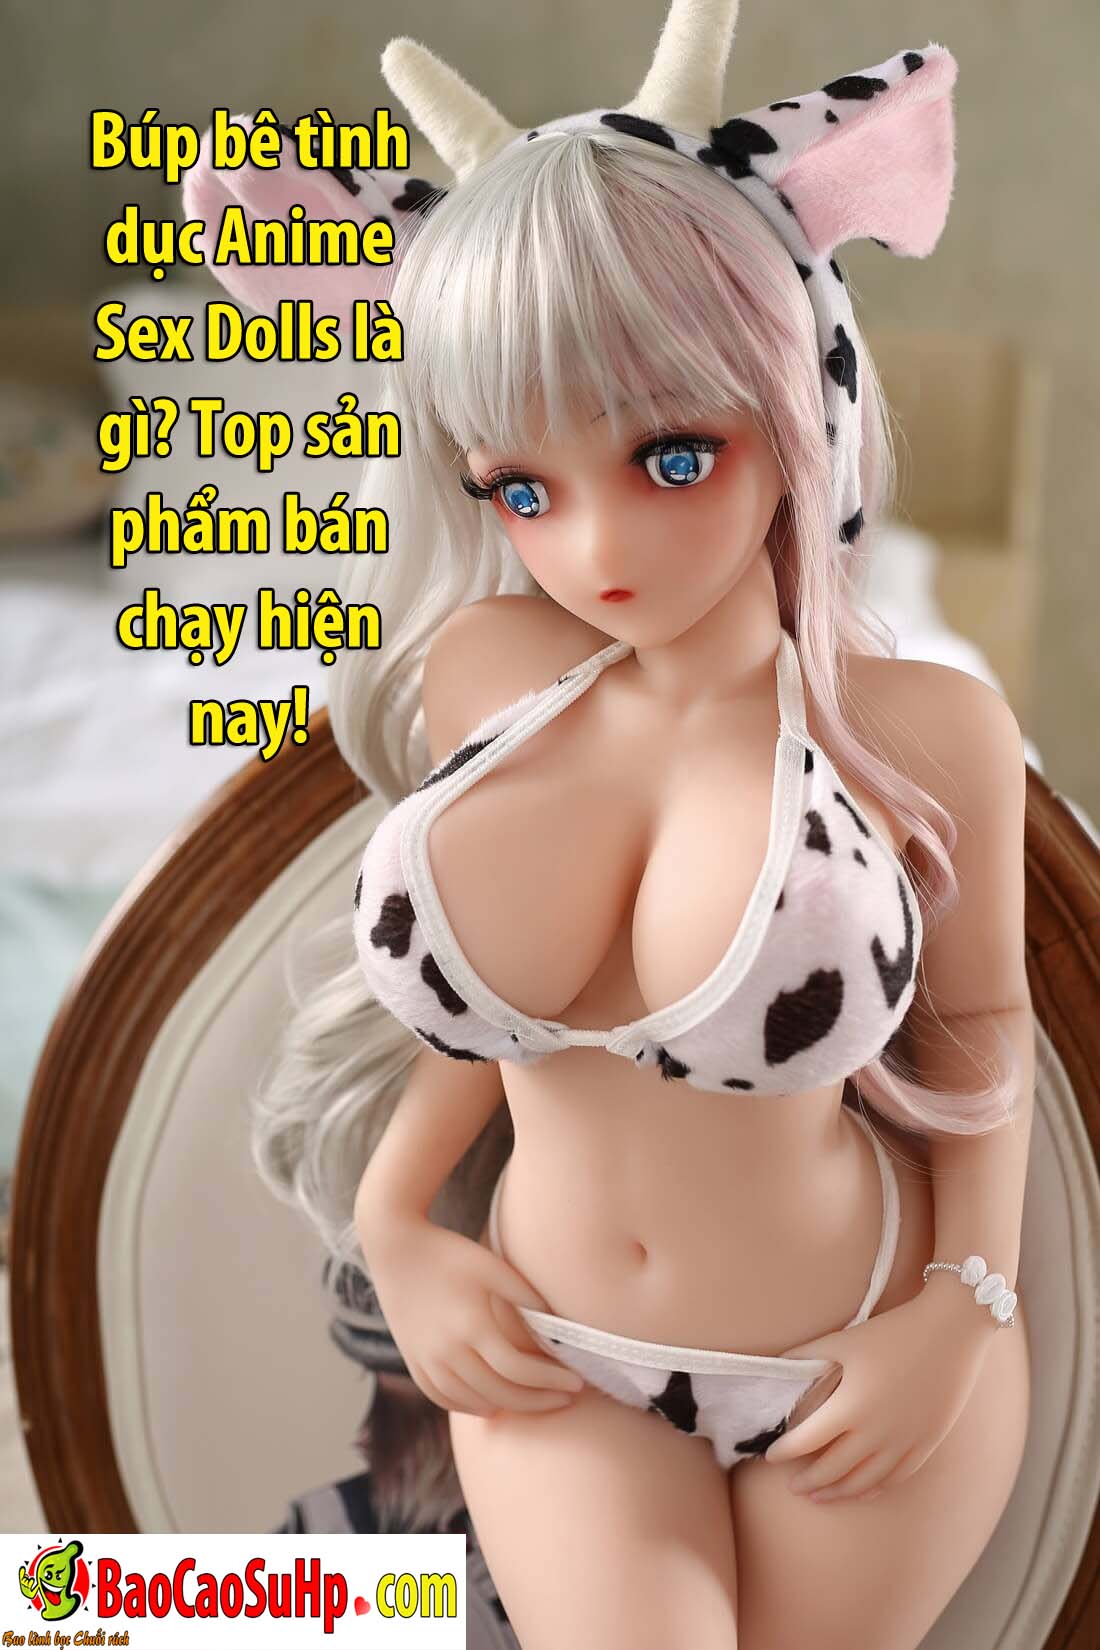 bup be tinh duc Anime Sex Dolls - Búp bê tình dục Anime Sex Dolls là gì? Top sản phẩm bán chạy hiện nay!